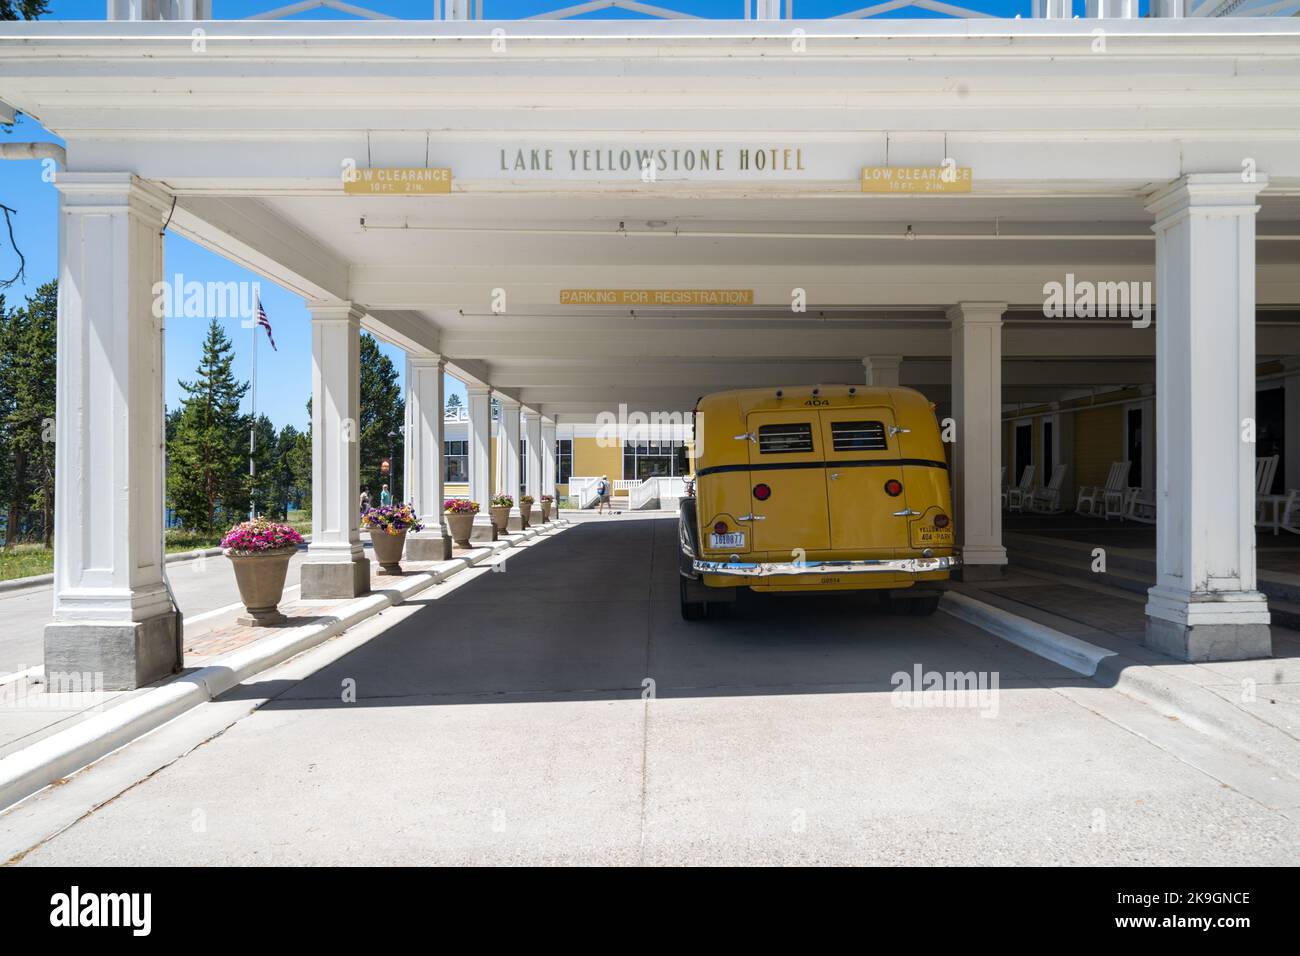 Wyoming, USA - 19. Juli 2022: Nahaufnahme eines White Model Tour Busses aus dem Jahr 1936, der für den Transport von Touristen durch den Yellowstone National Park entwickelt und verwendet wurde Stockfoto